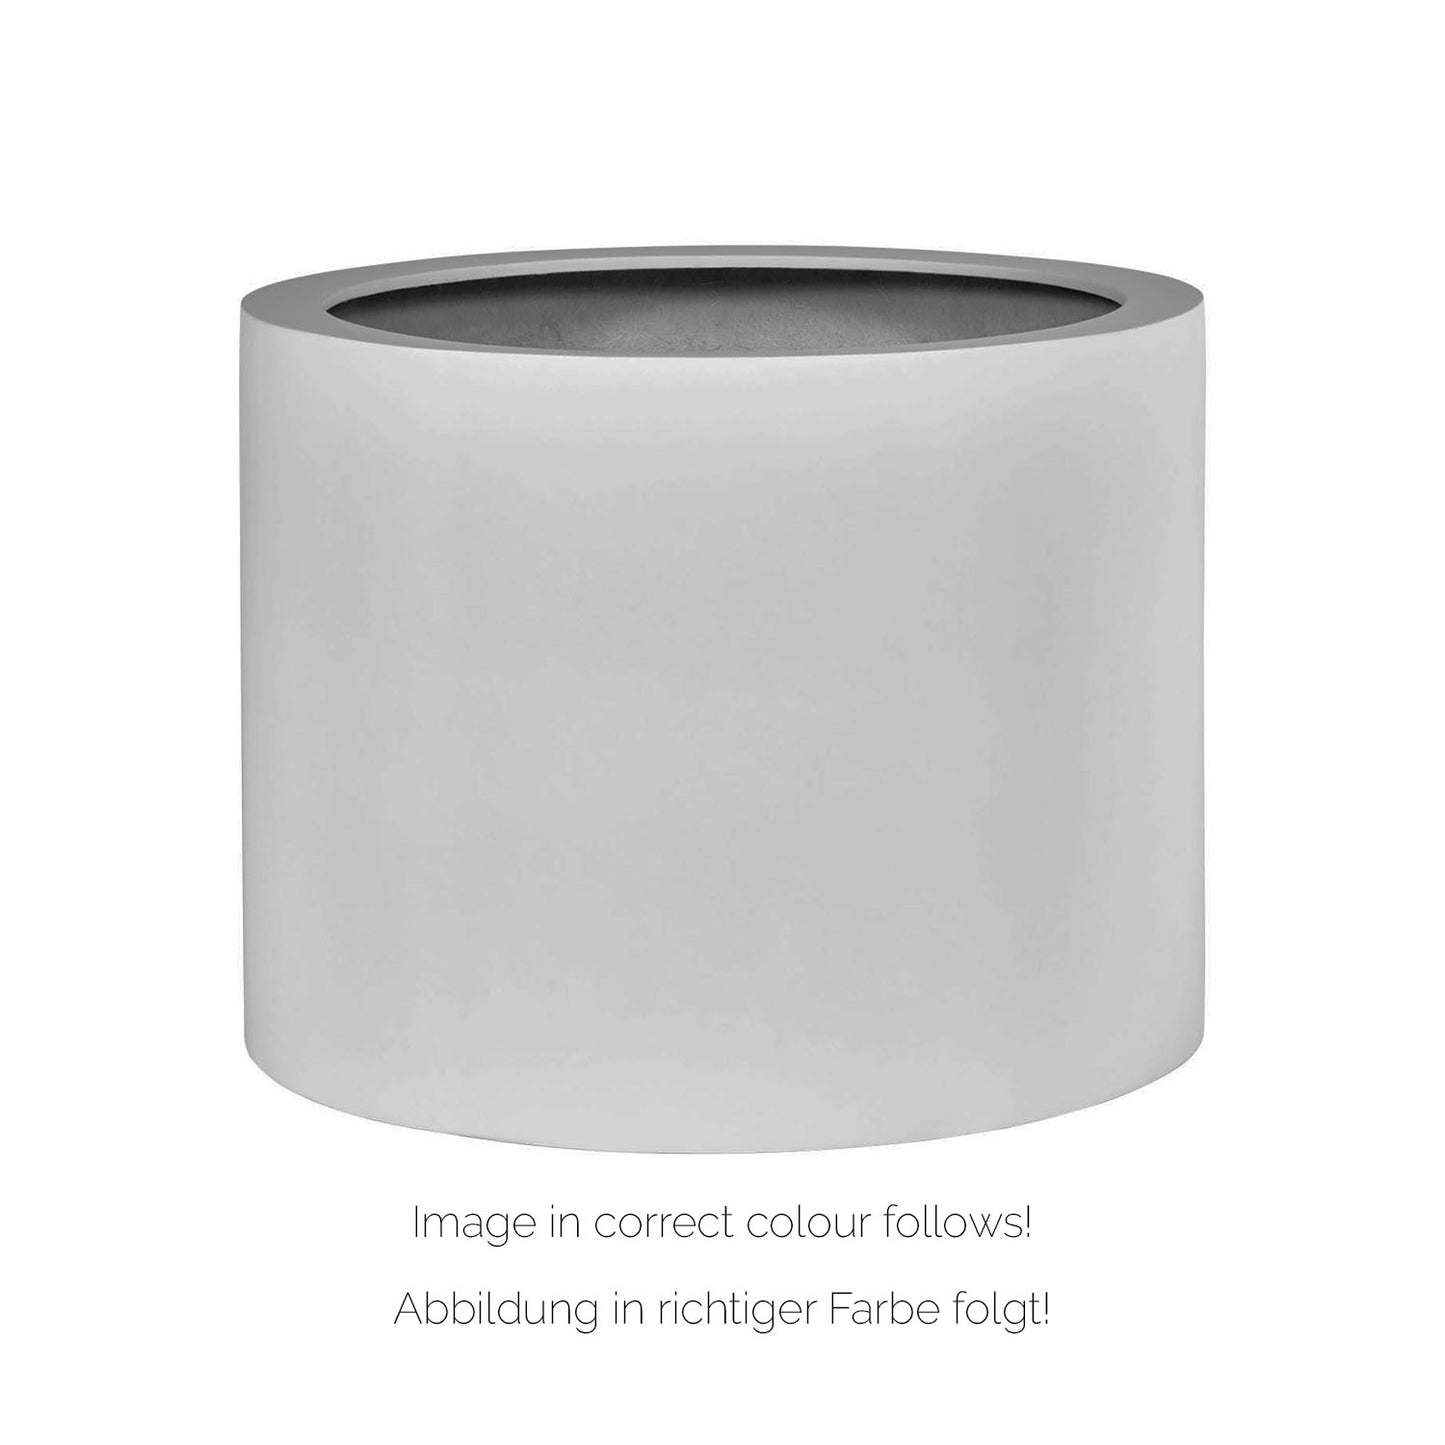 New Tribeca Shape Pflanzgefäß zylindrisch mit Rollenaufnahme, Ø 60 cm, Höhe 40 cm, granit anthrazit